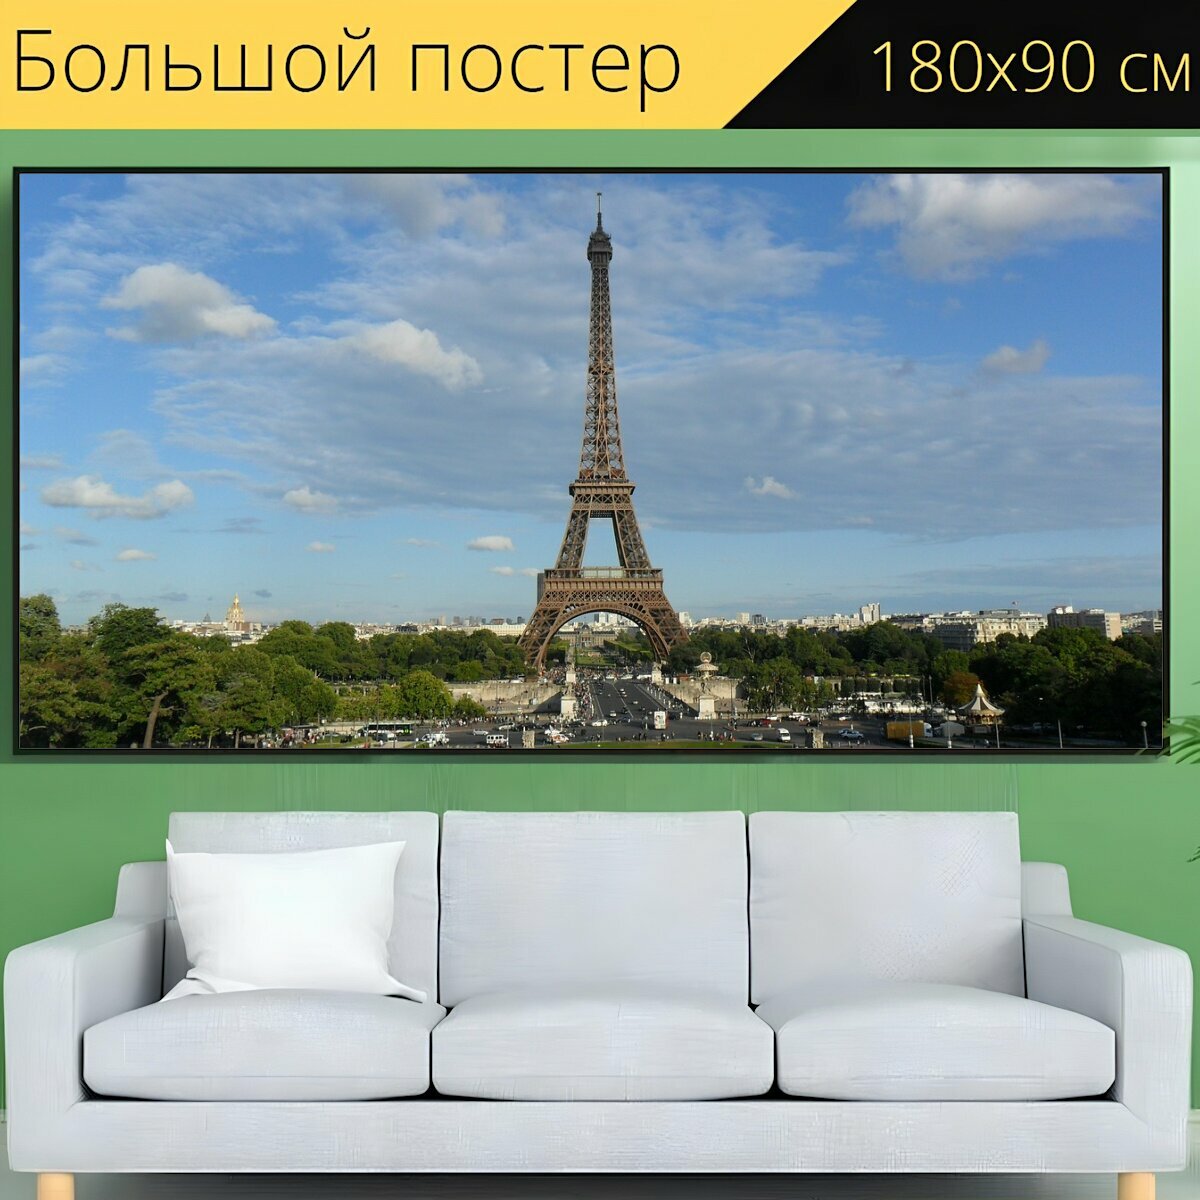 Большой постер "Эйфелева башня, париж, франция" 180 x 90 см. для интерьера